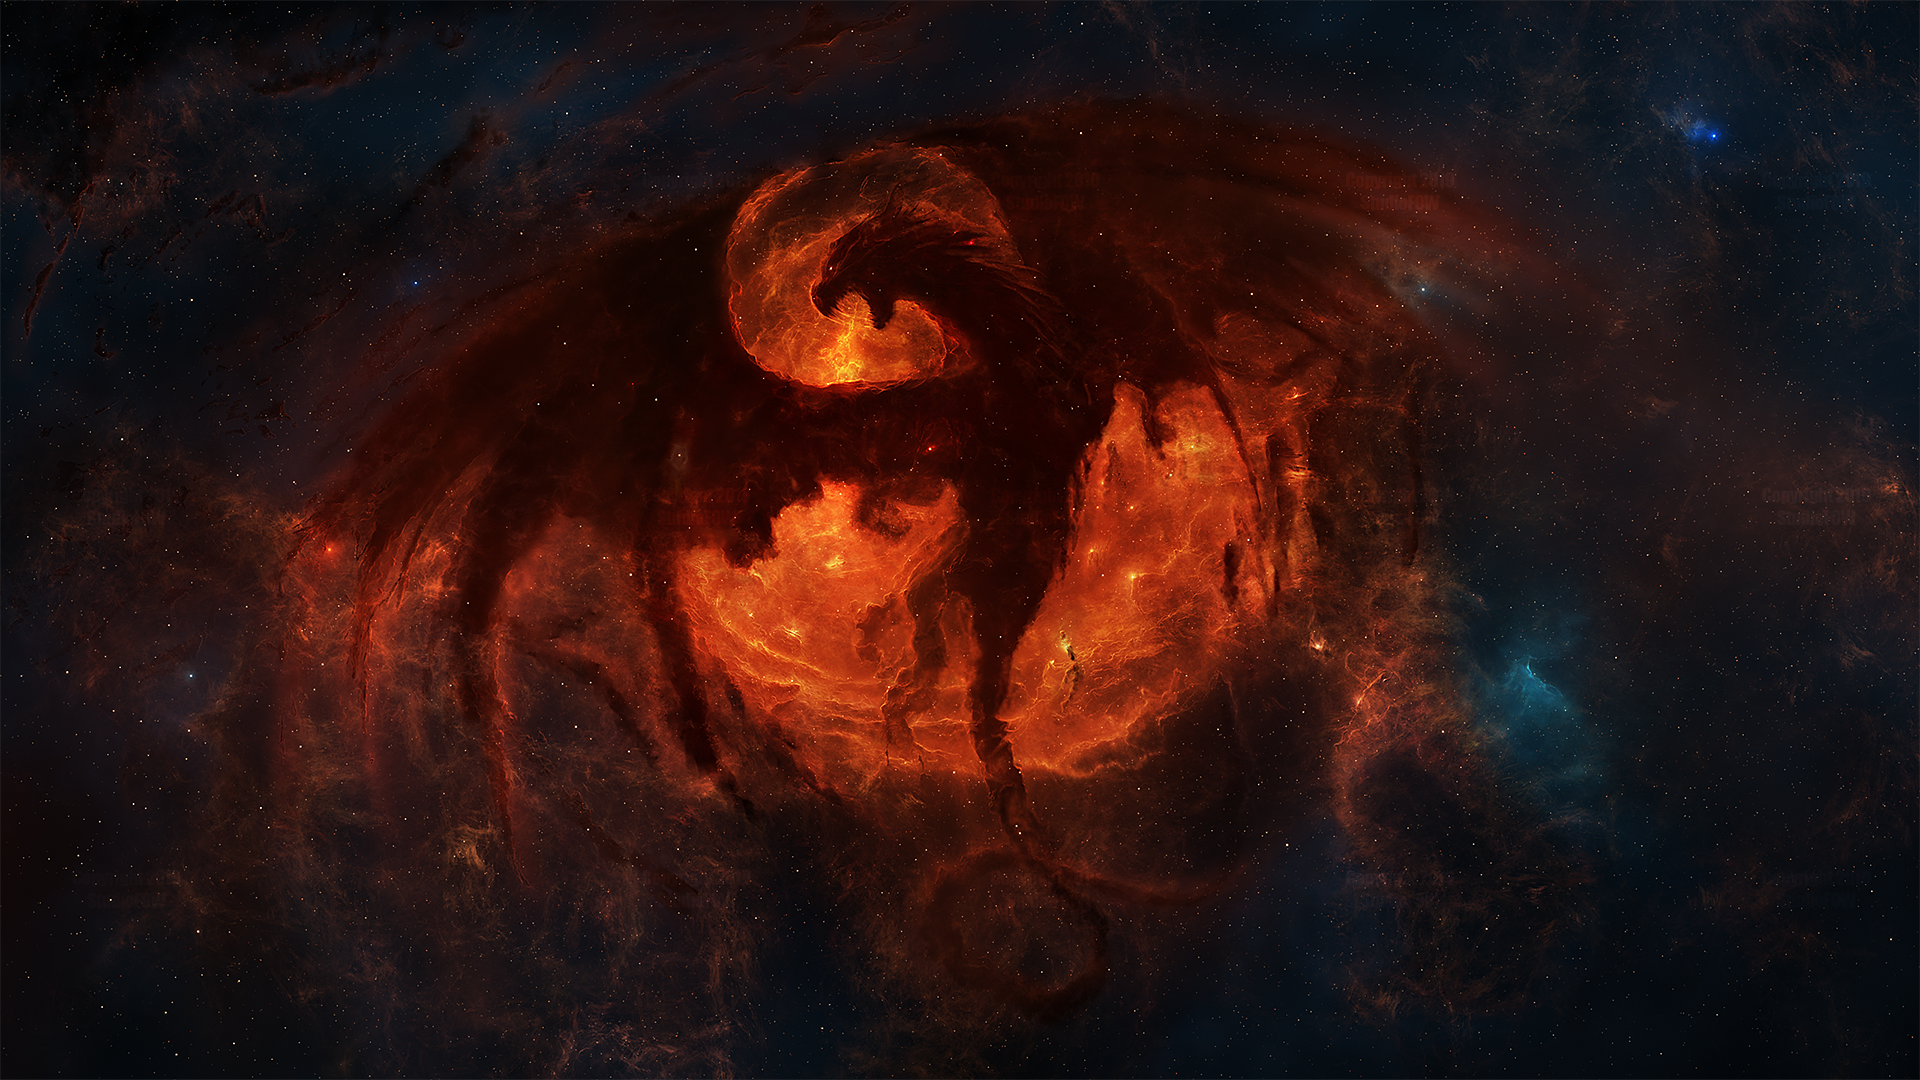 Dragon Nebula HD Wallpaper | Background Image | 1920x1080 | ID:1003670